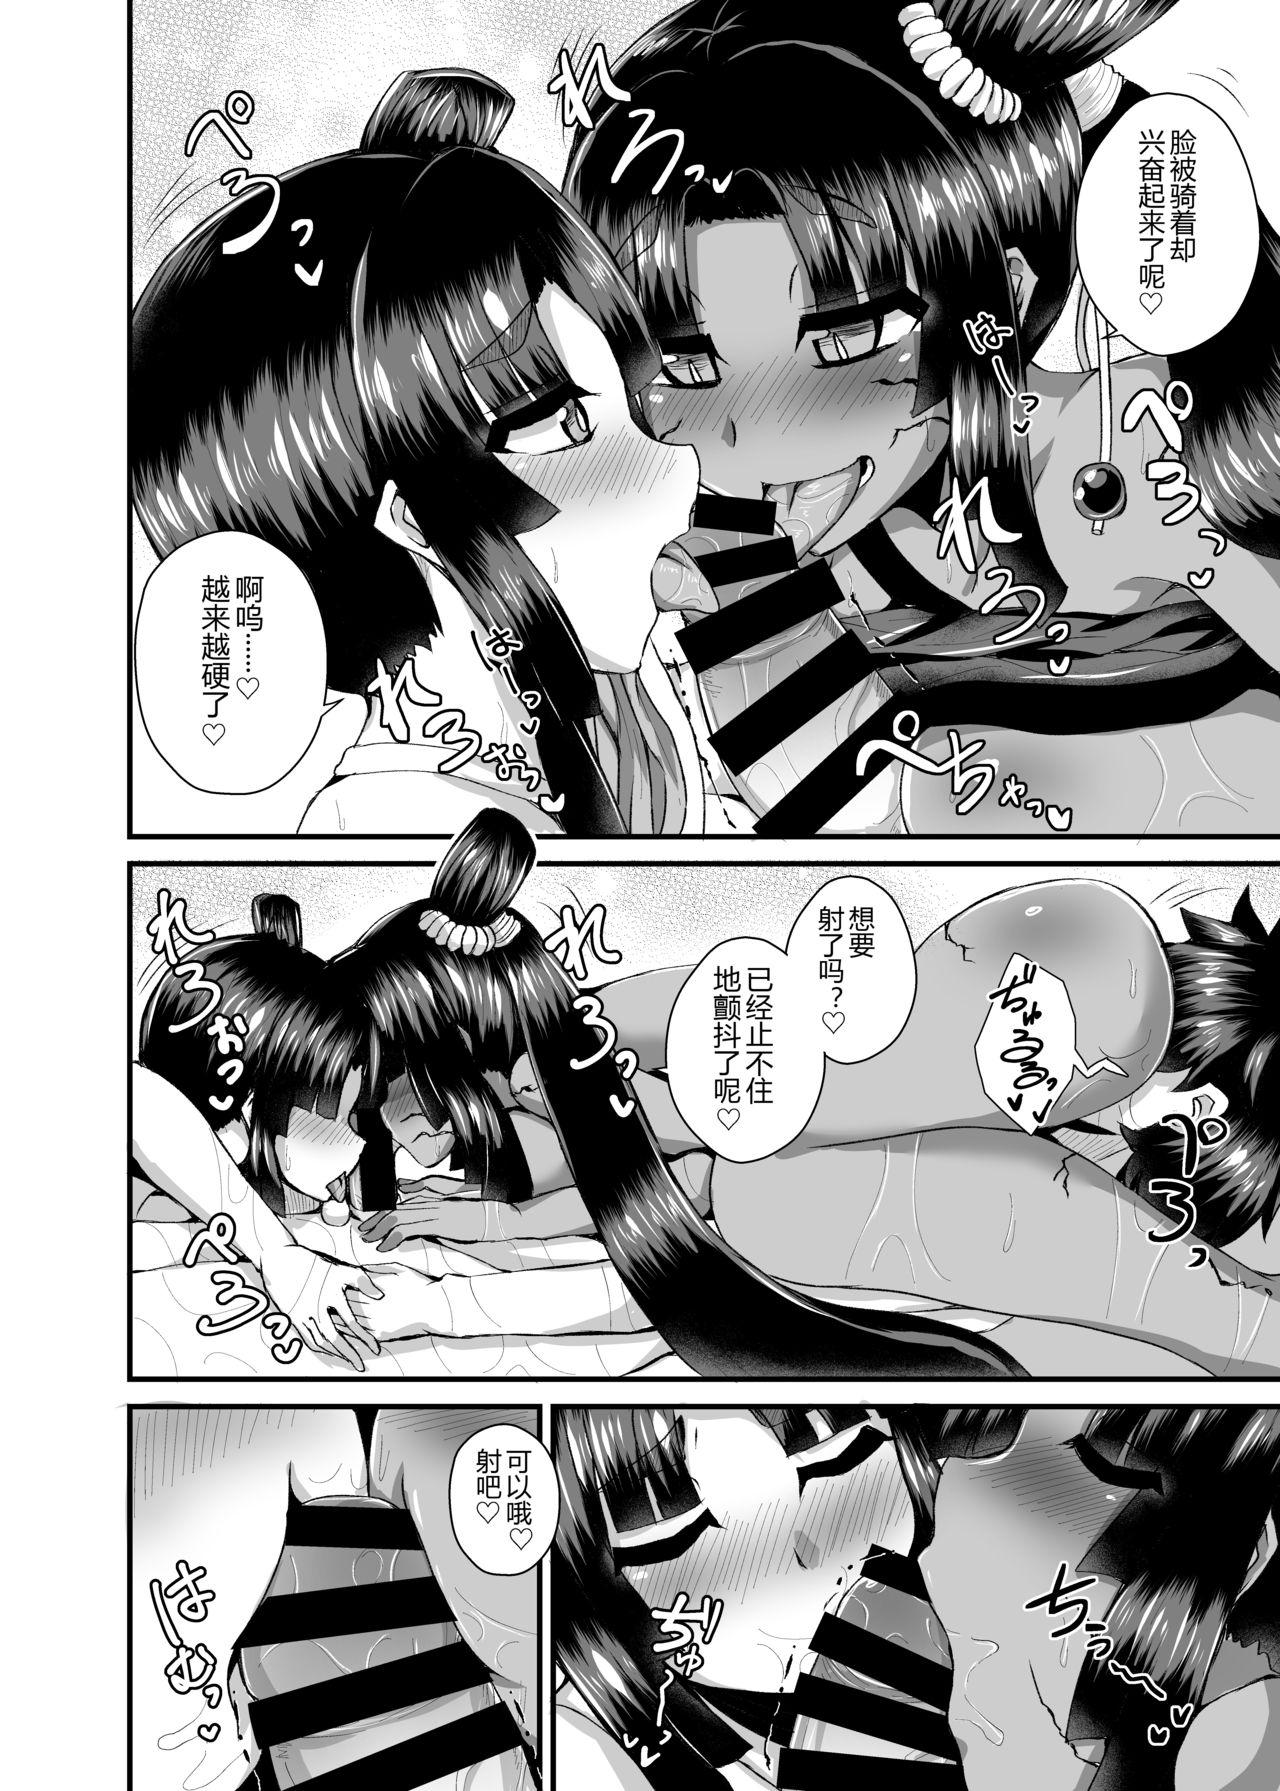 Money Ushiwakamaru, Oshite Mairu! 2 - Fate grand order Sexcams - Page 12